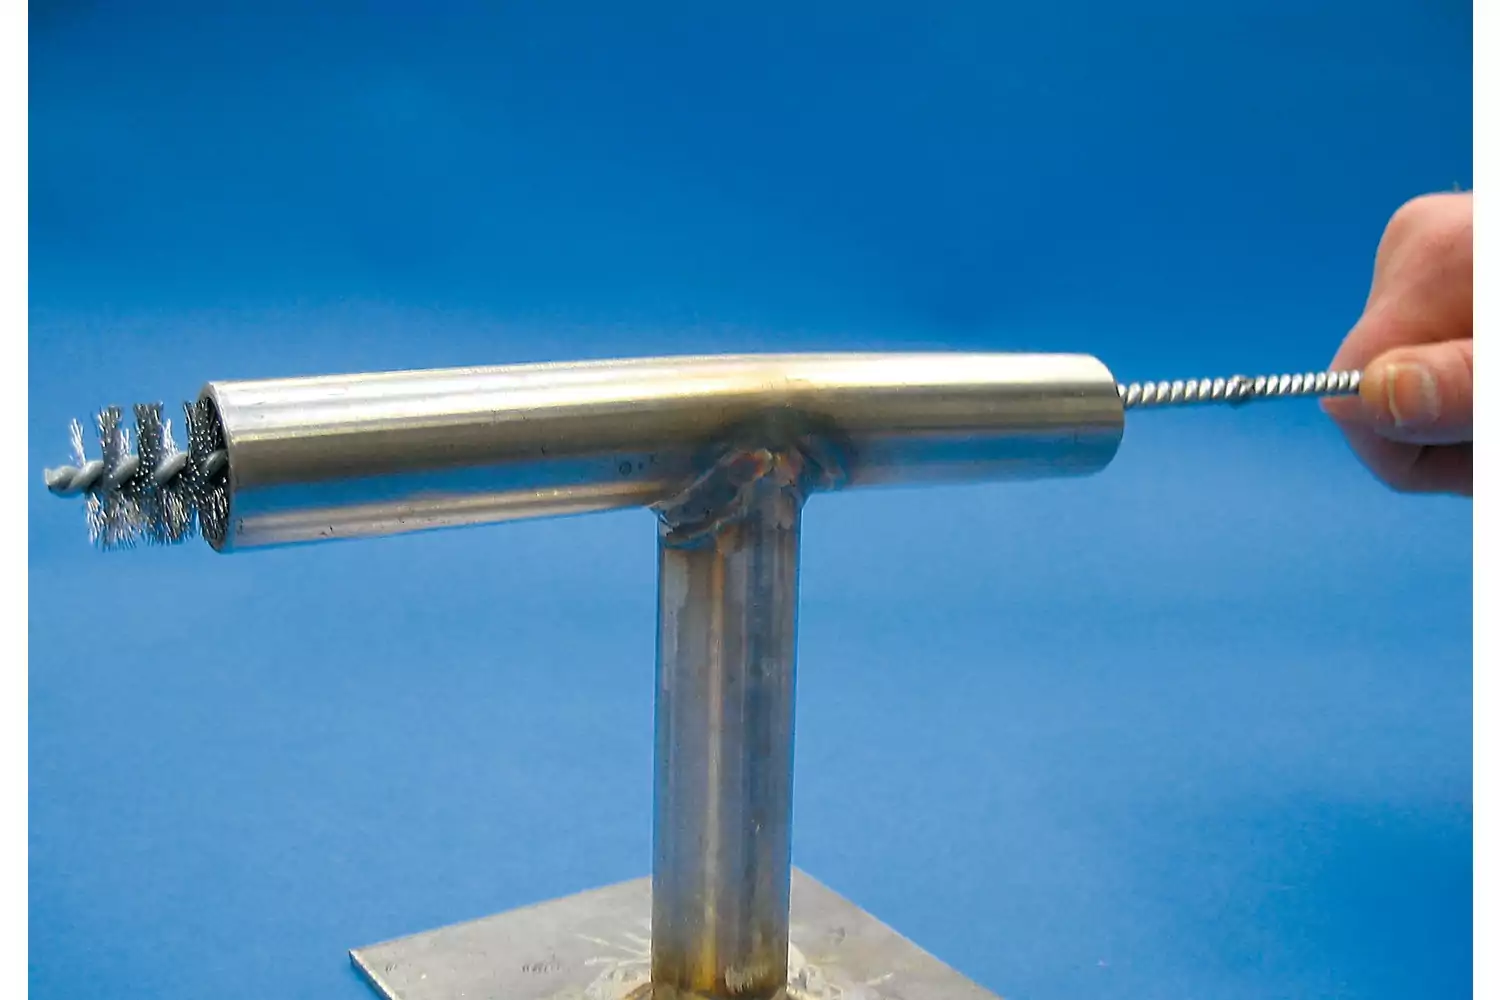 Accesorios de prolongador IBUV para cepillos limpiatubos con rosca M6 1000 mm de longitud 2